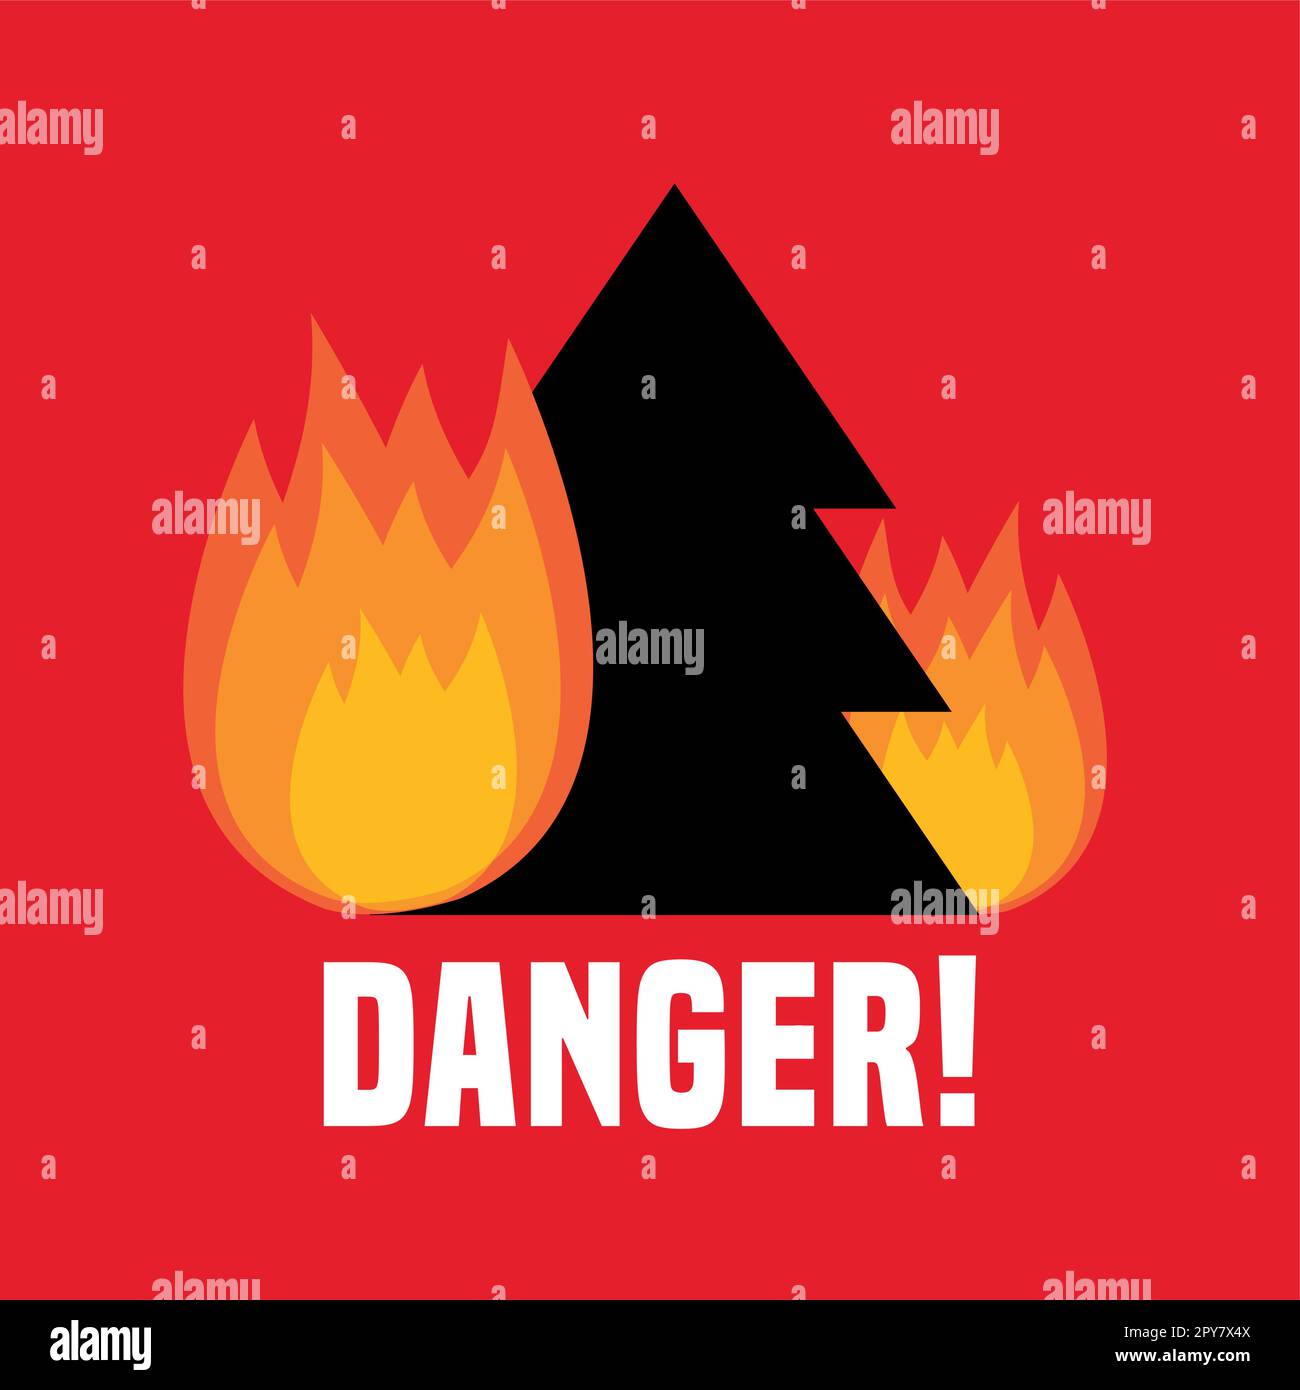 danger of forest fire burning fir trees illustration Stock Vector